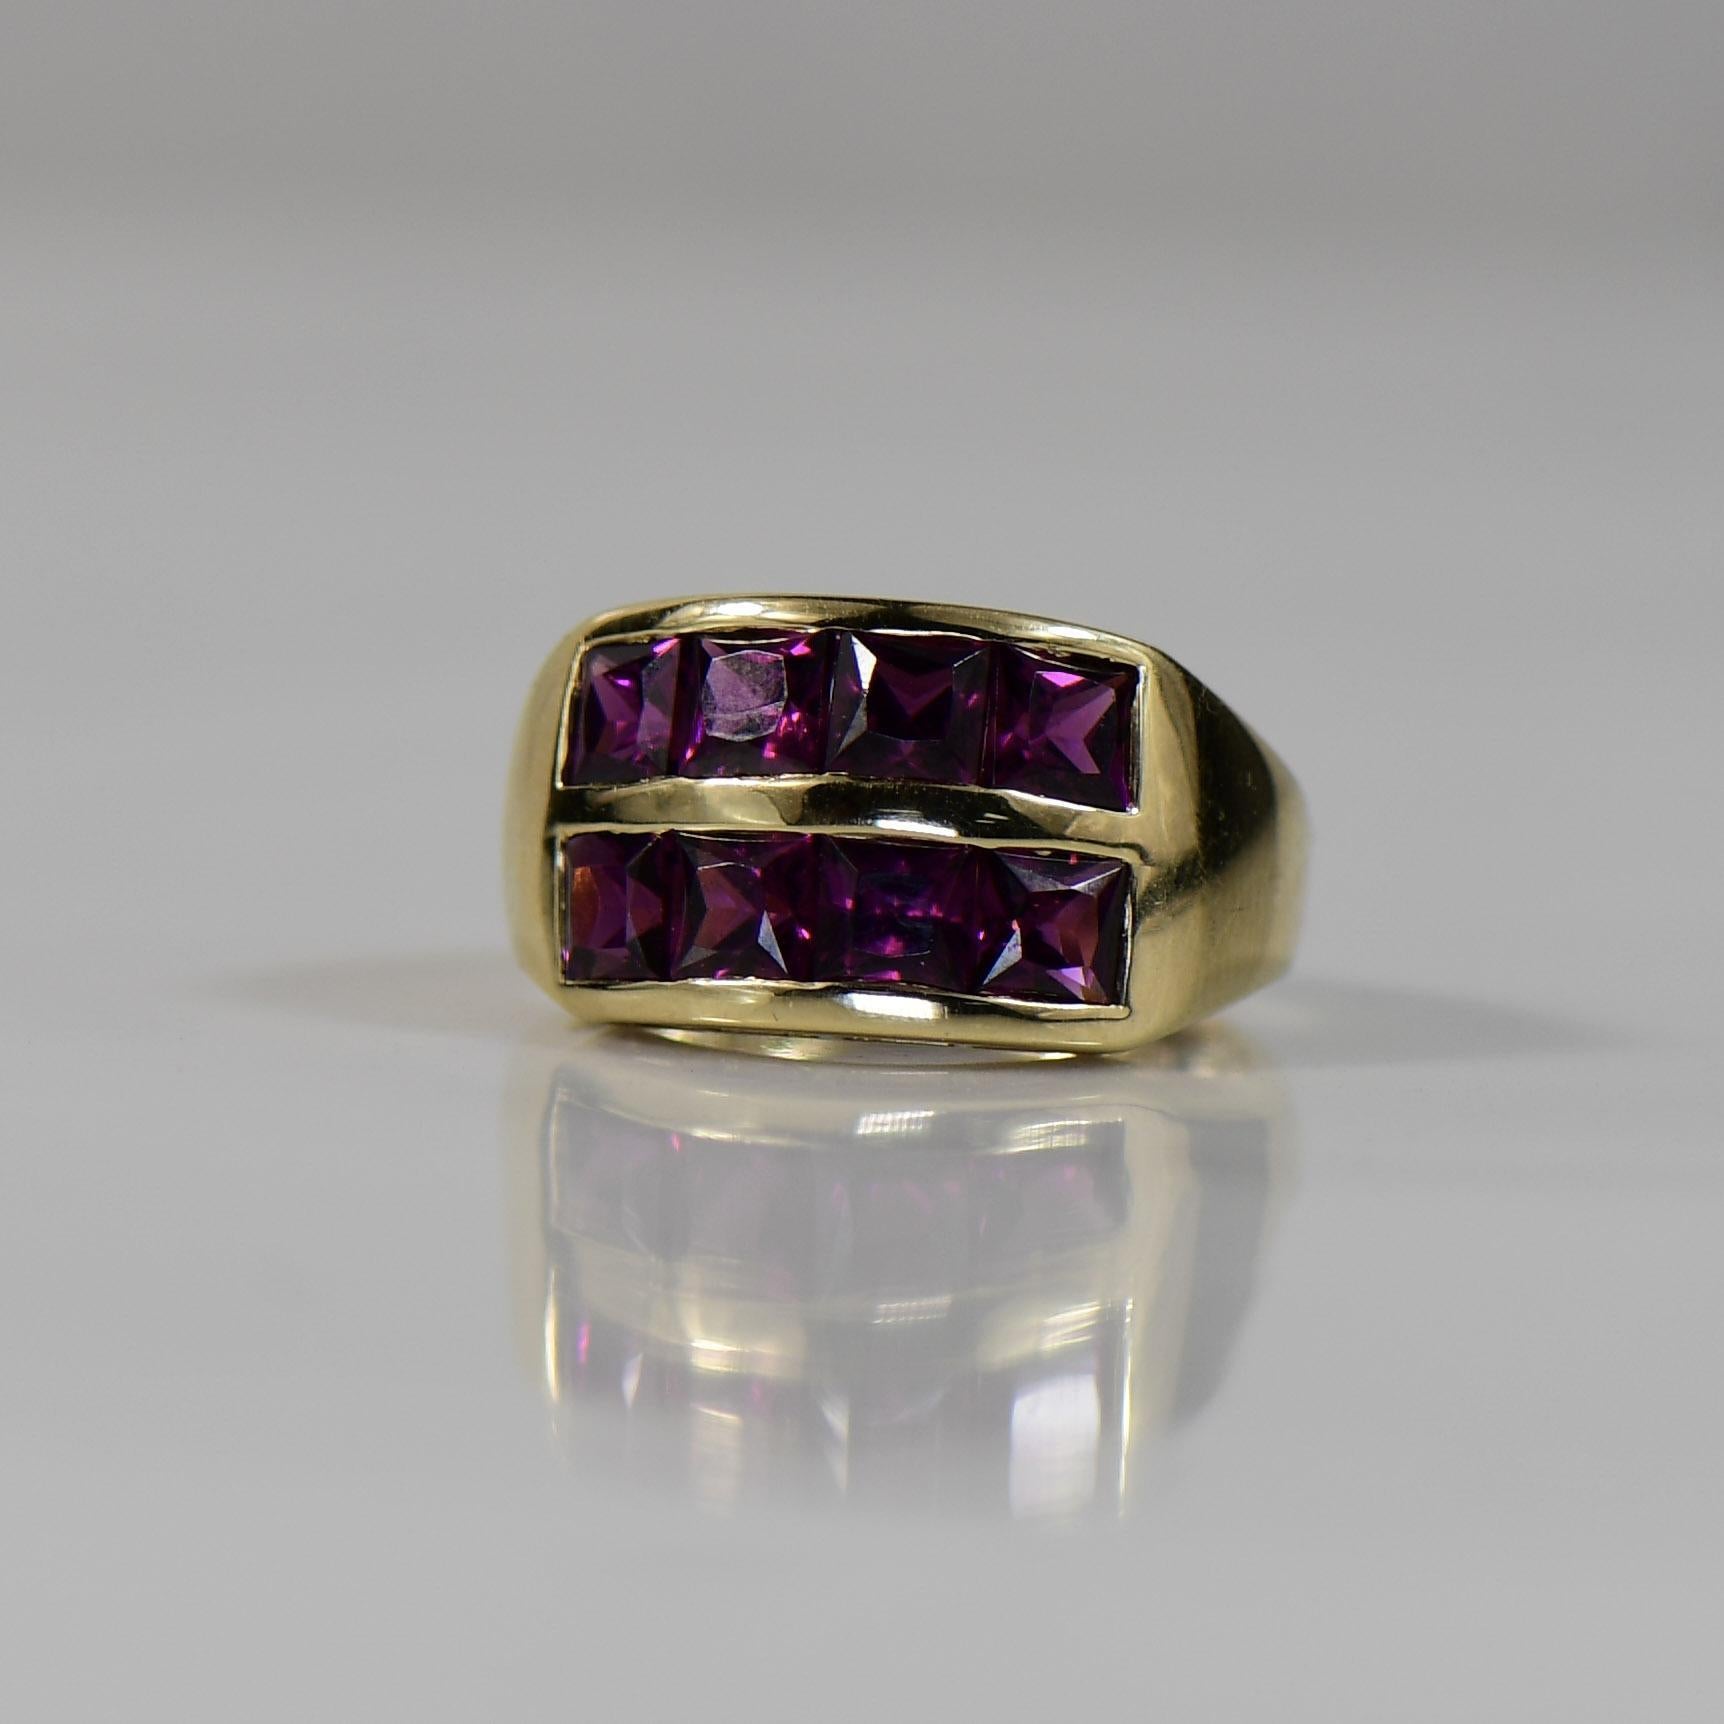 Dieser Ring aus prächtigem 14-karätigem Gelbgold besticht durch eine Reihe von Rhodolith-Granaten im französischen Schliff, die ein atemberaubendes Spiel von tiefroten Farbtönen erzeugen. Die präzise geschliffenen Edelsteine sind in einem